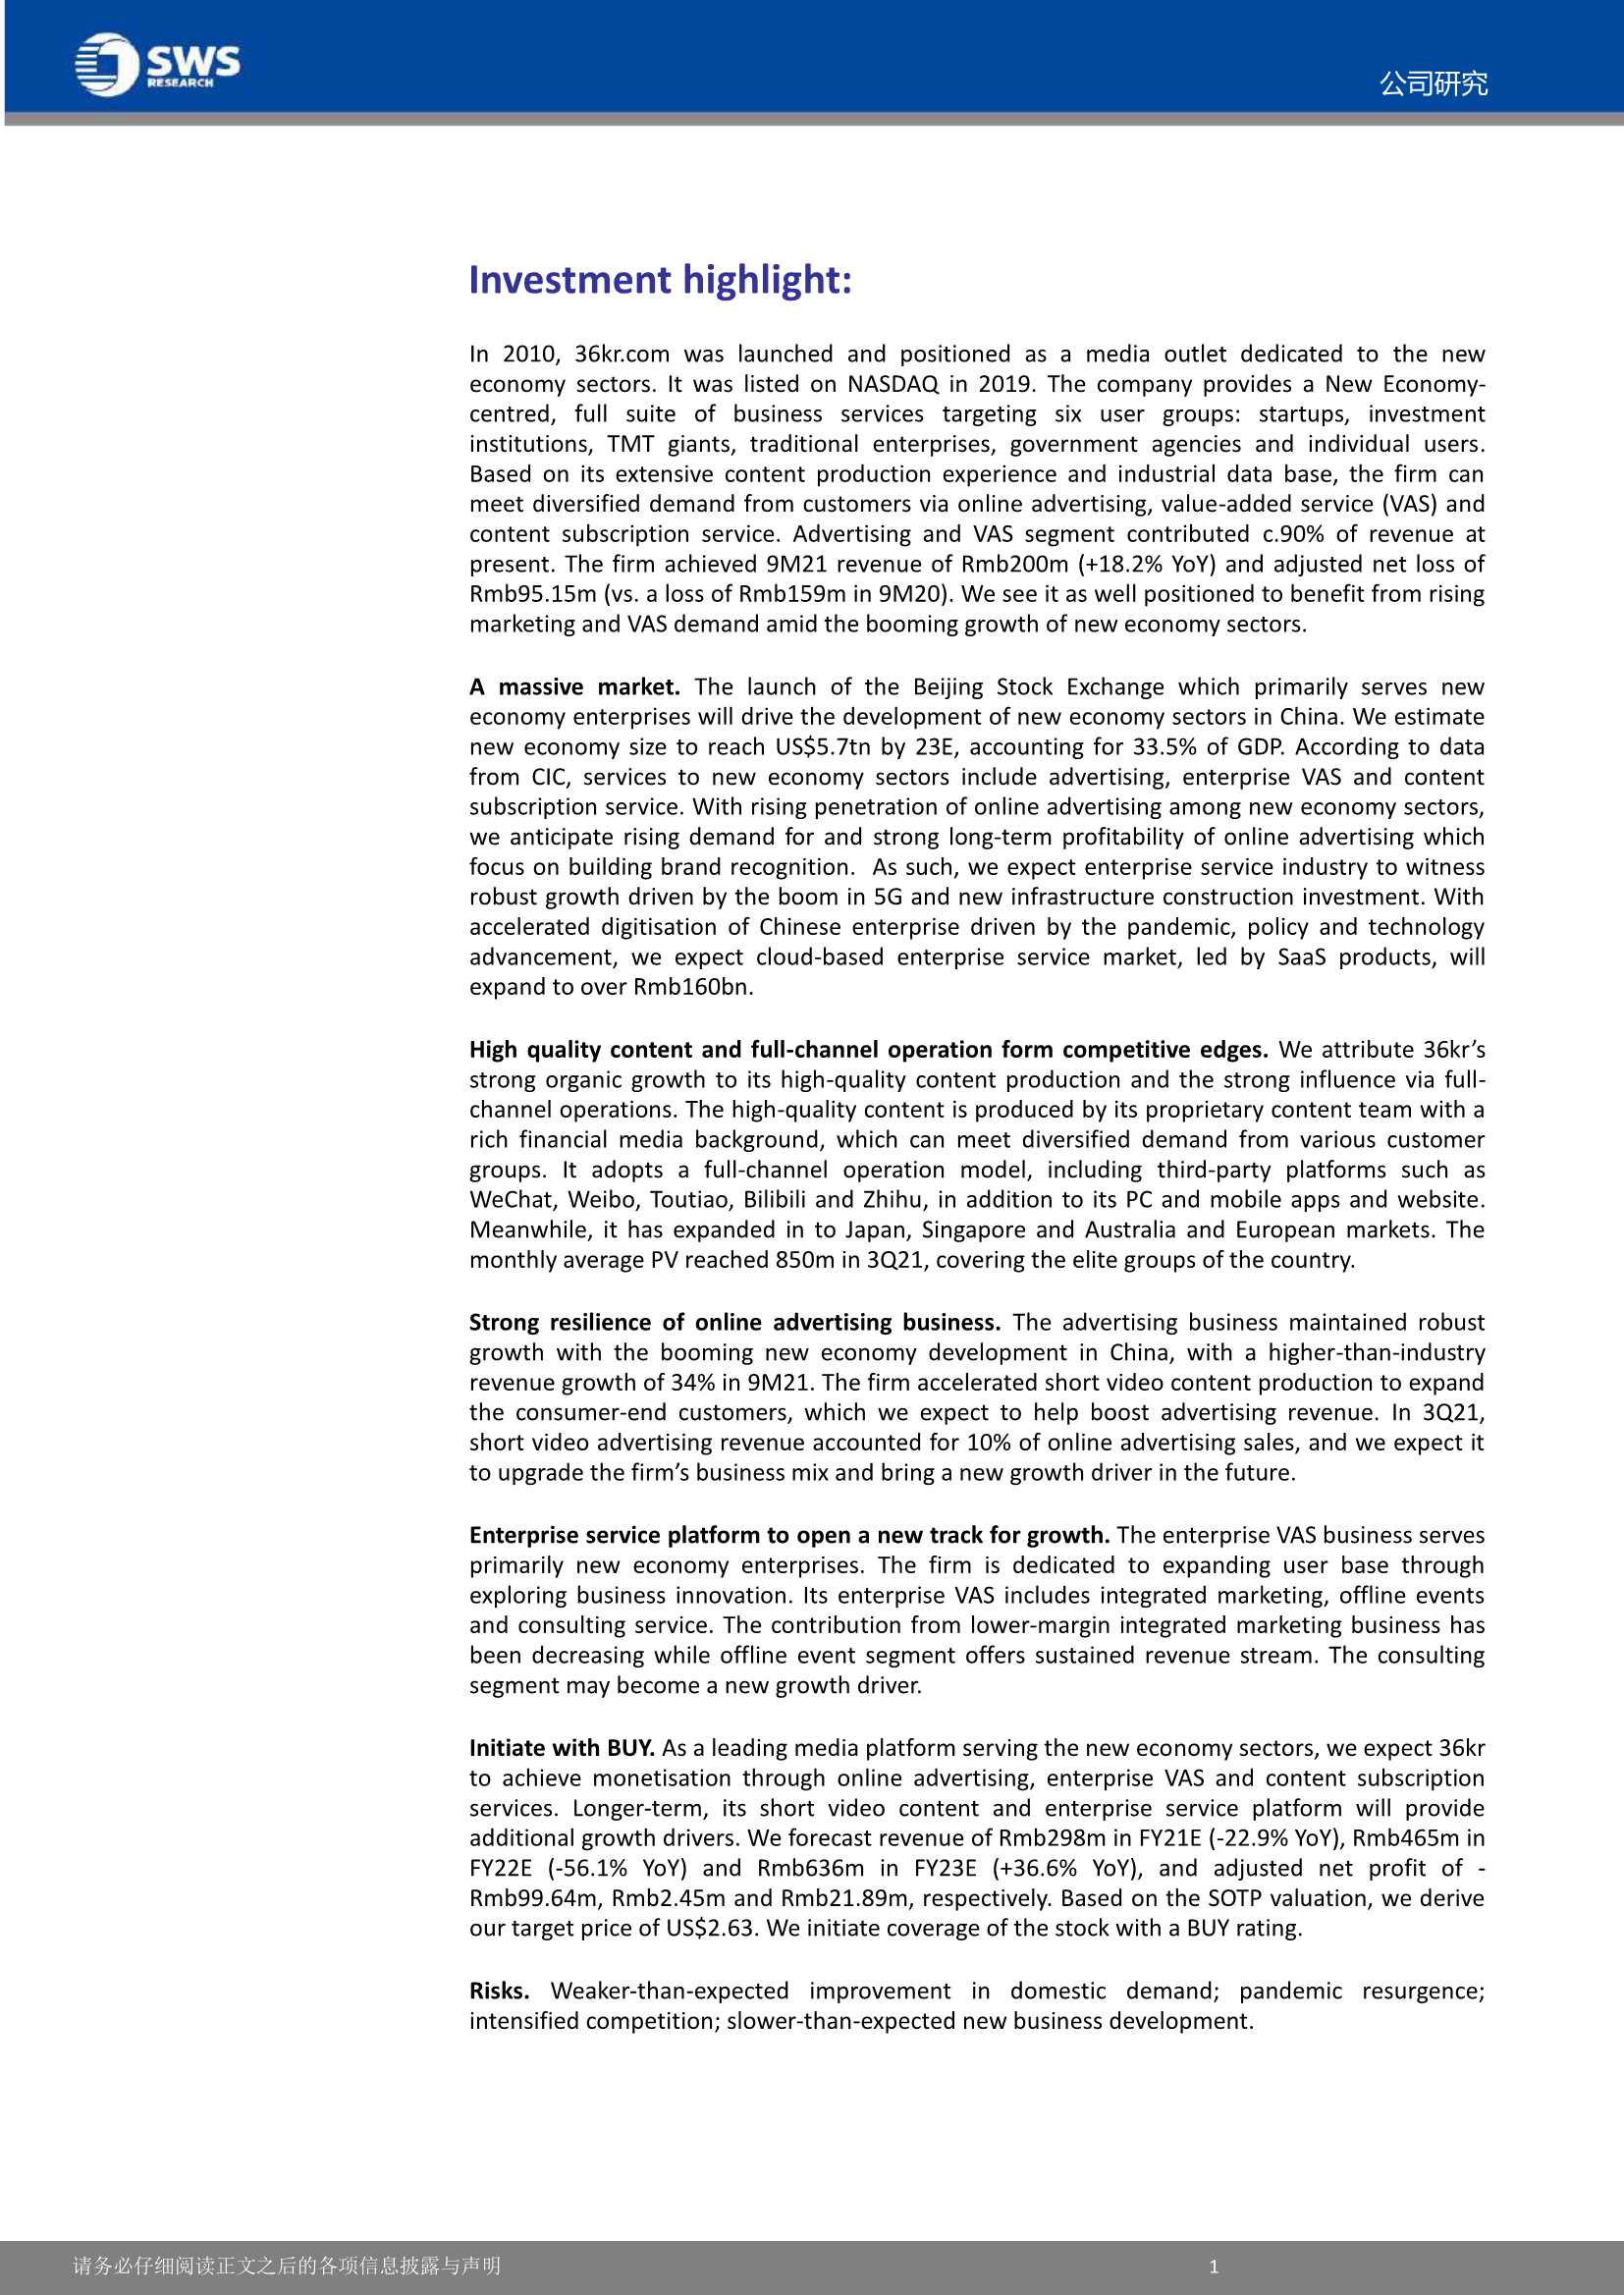 申万宏源-36氪-KRKR.US-优质内容驱动商业化，企服业务未来“氪”期-20220302-35页